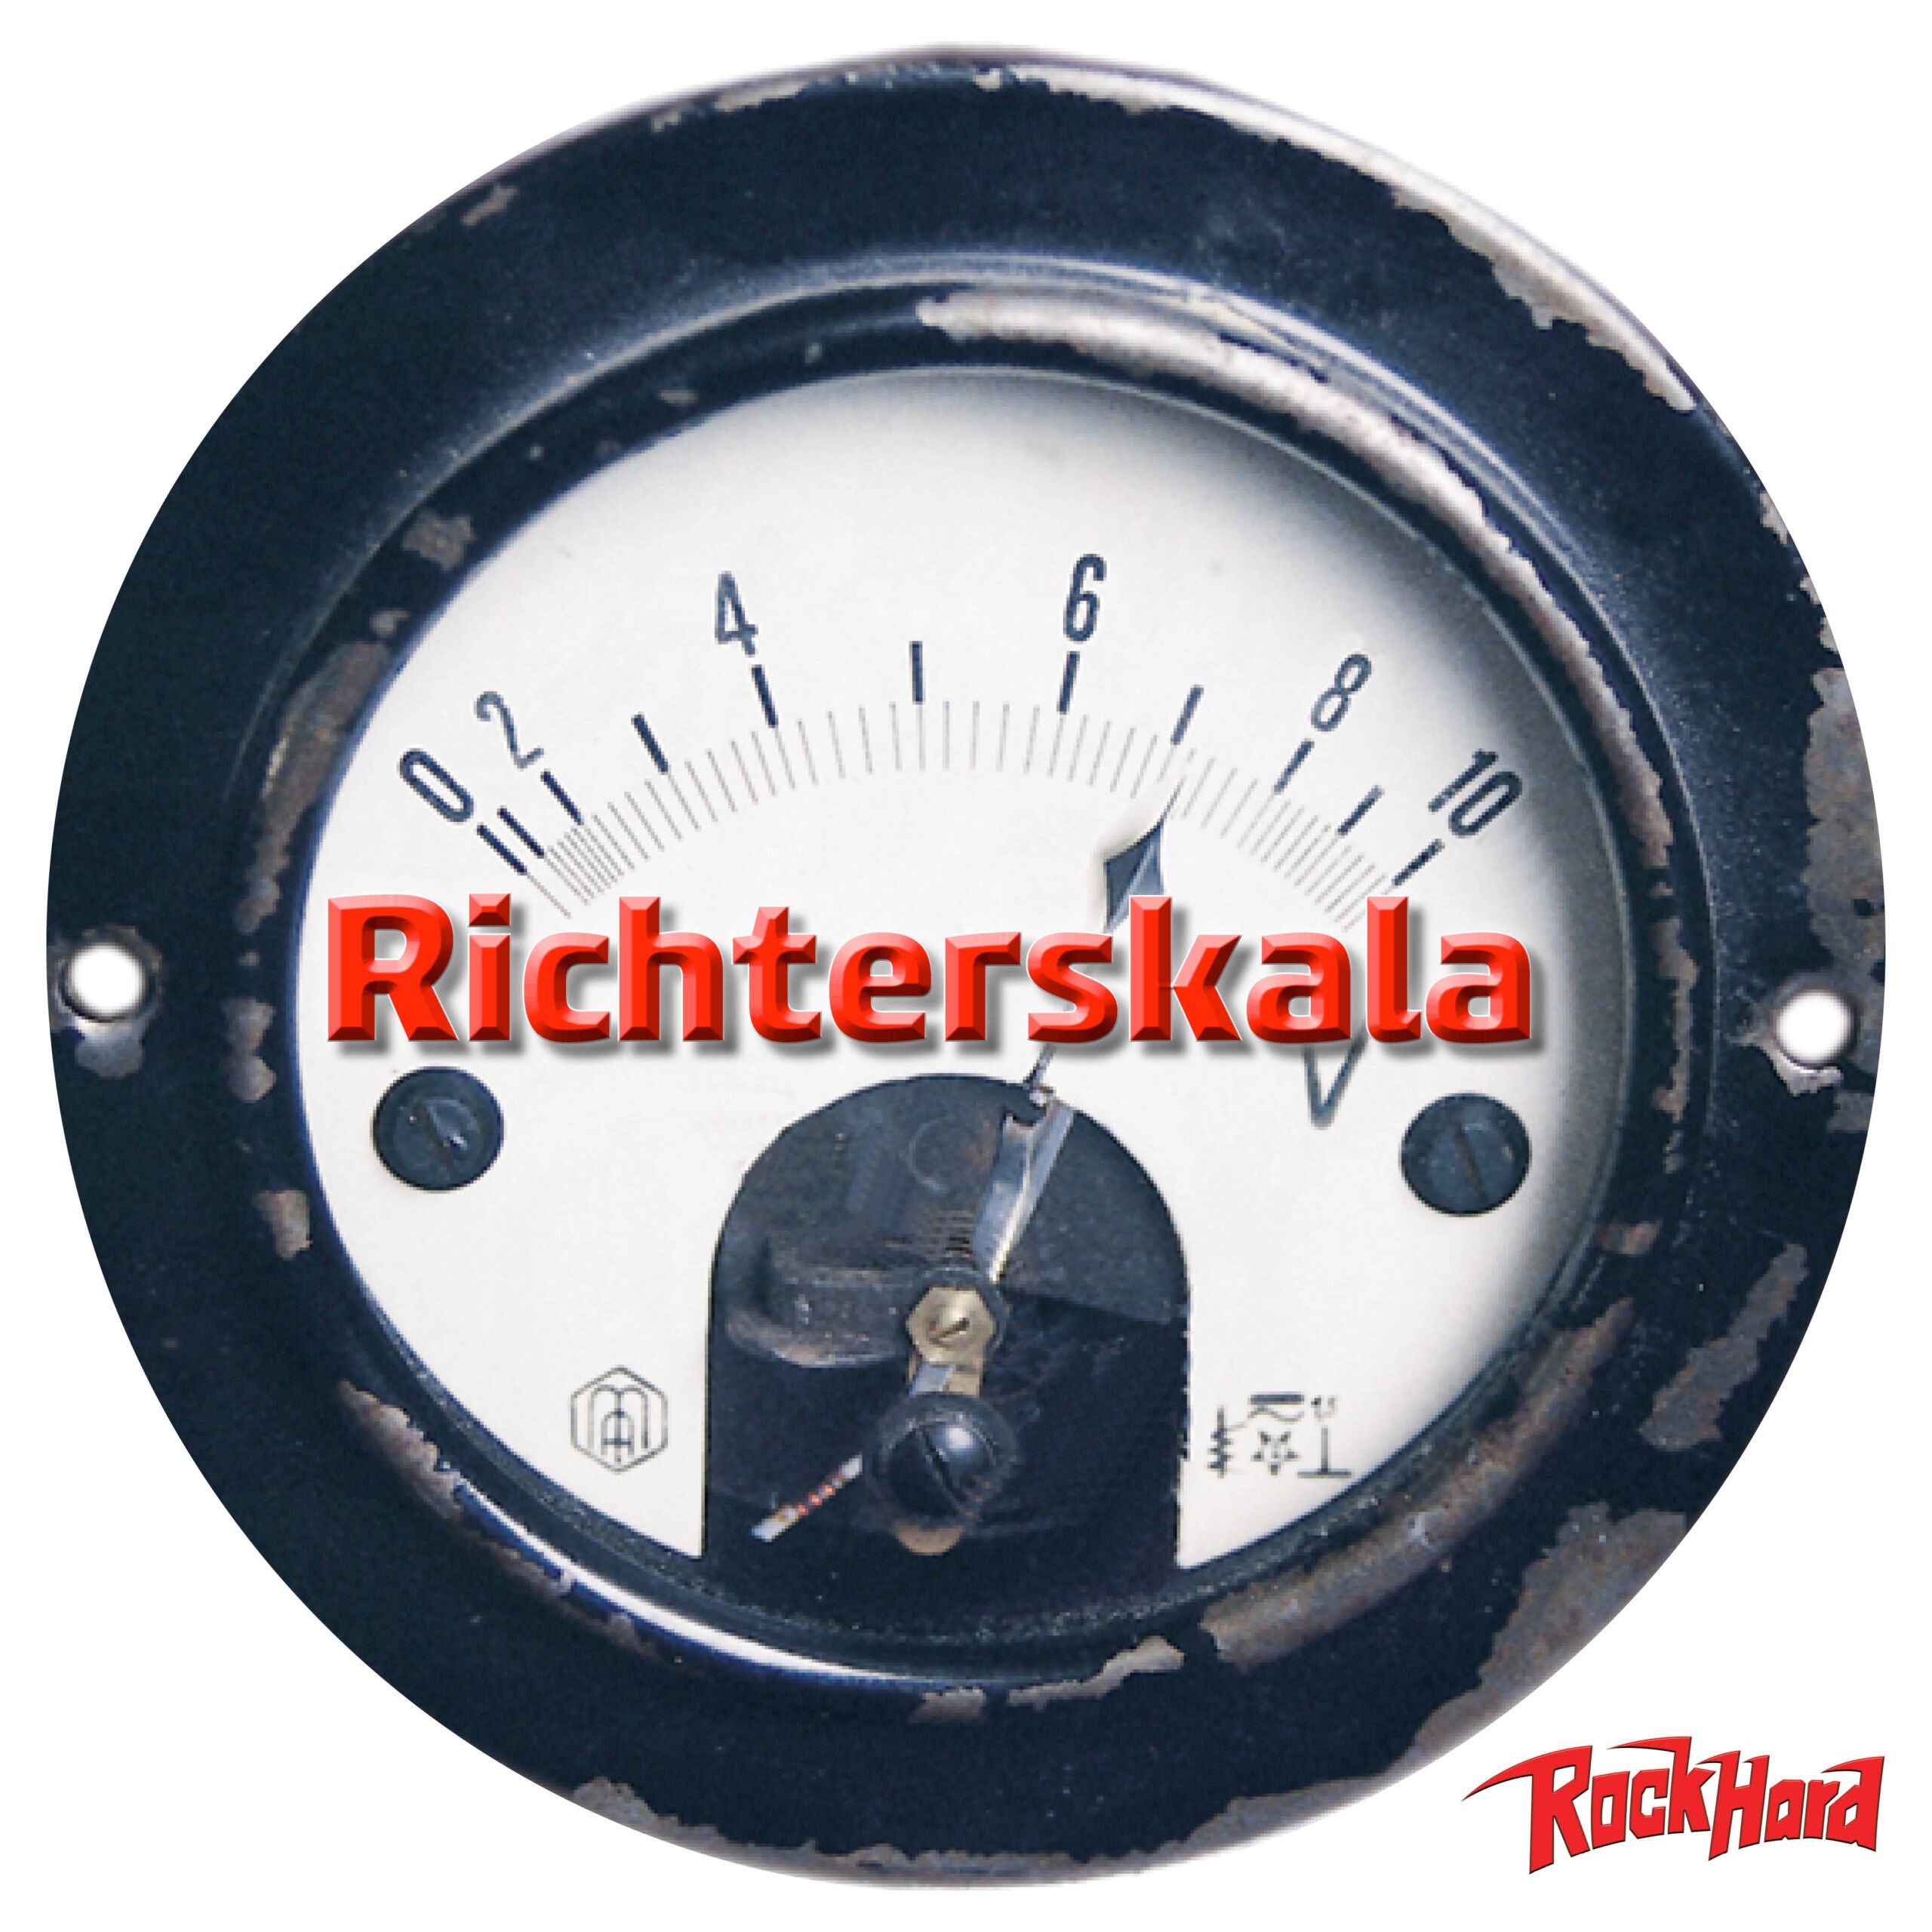 Rock Hard Richterskala April 2021: Die Spotify-Playlist ist online